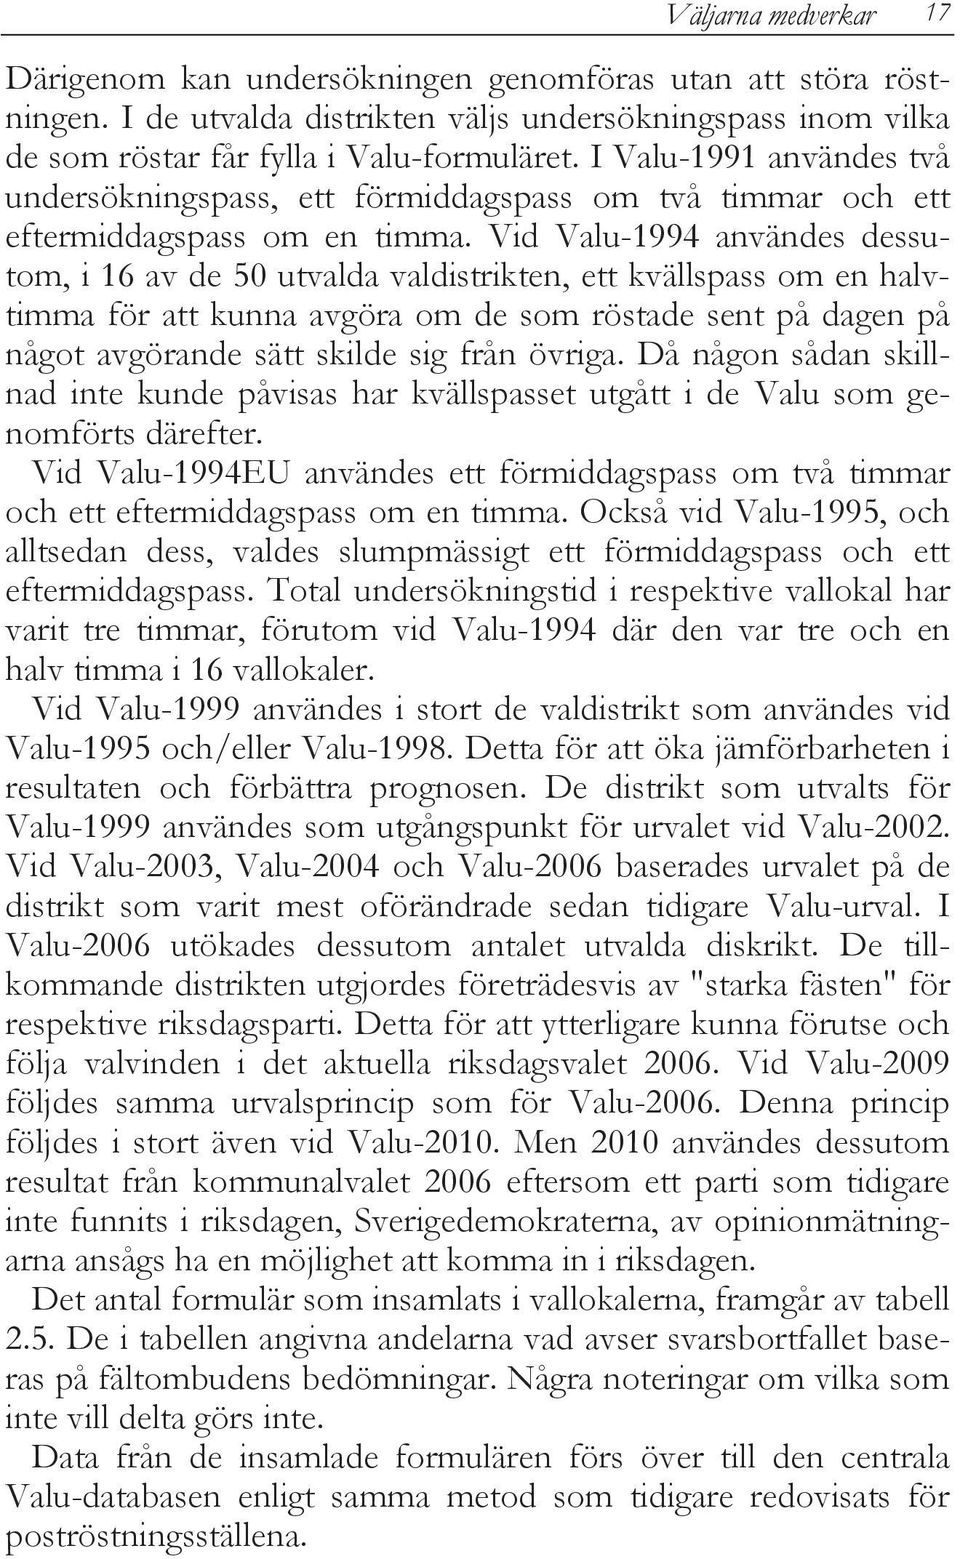 Vid Valu-1994 användes dessutom, i 16 av de 50 utvalda valdistrikten, ett kvällspass om en halvtimma för att kunna avgöra om de som röstade sent på dagen på något avgörande sätt skilde sig från